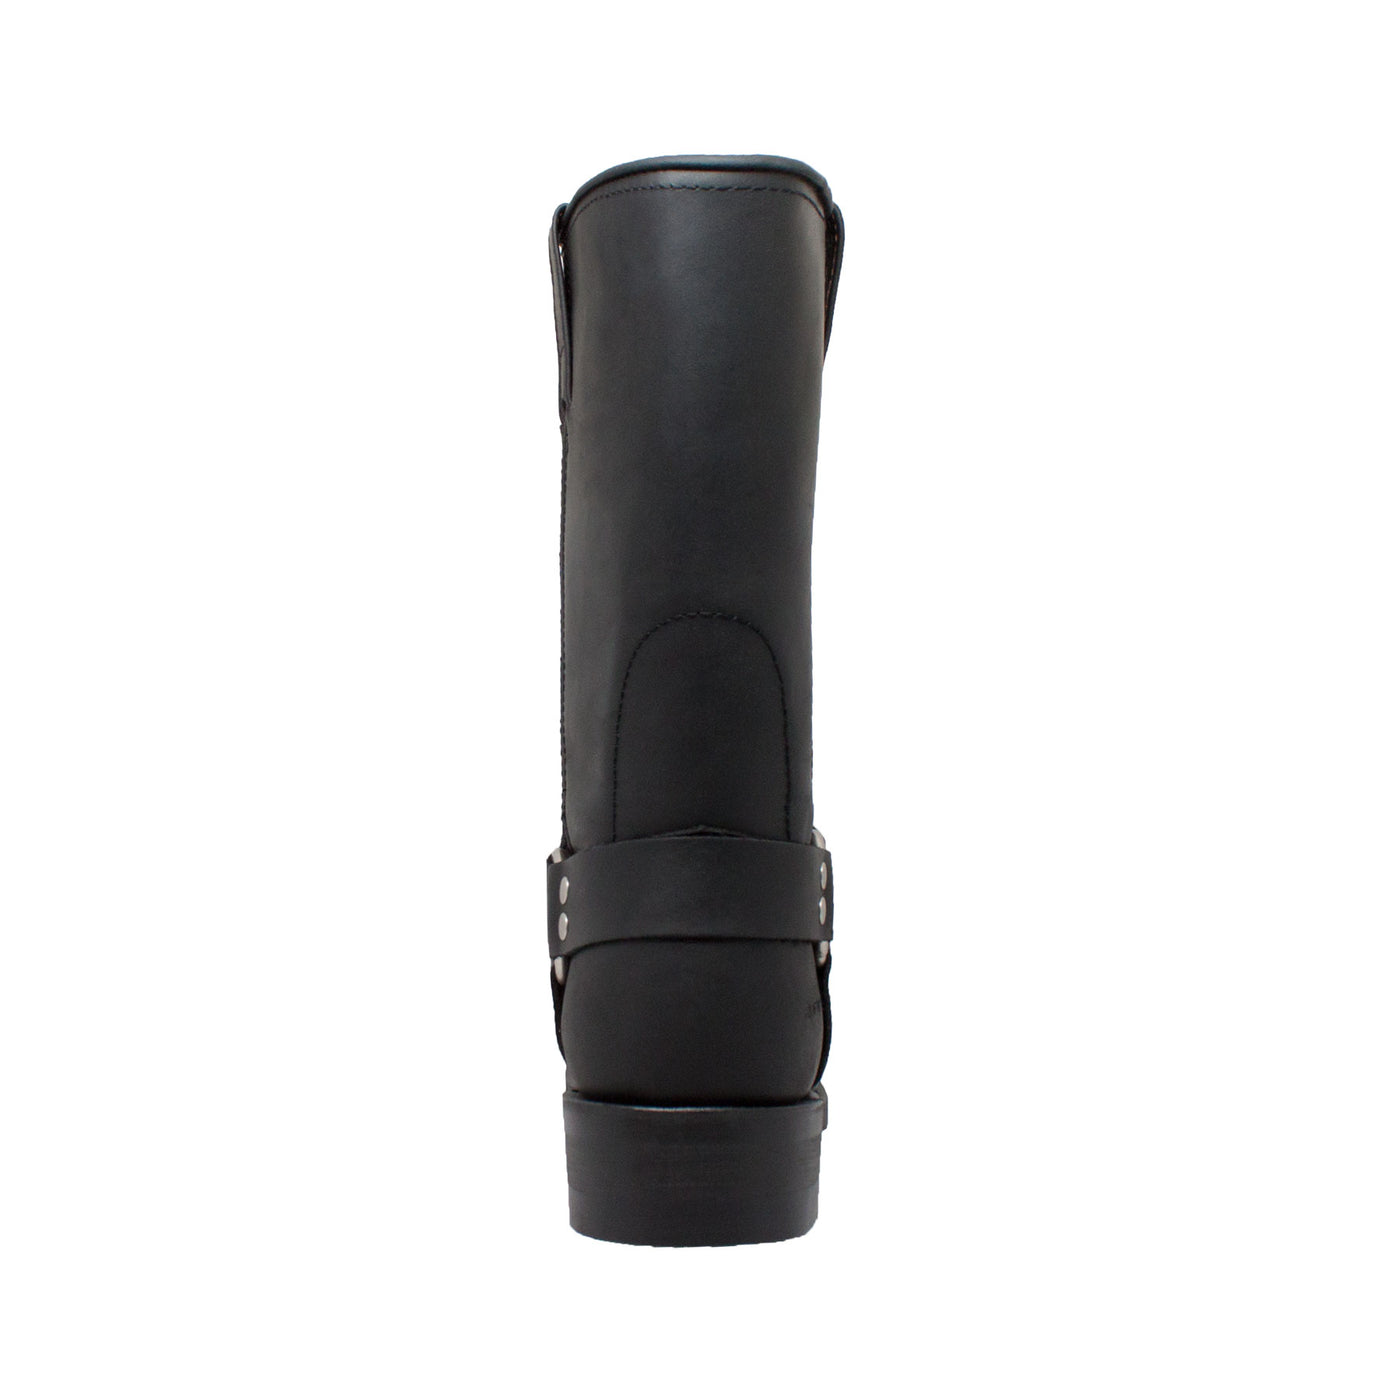 Men's 13" Side Zipper Boot Black - 1442Zipper - Shop Genuine Leather men & women's boots online | AdTecFootWear